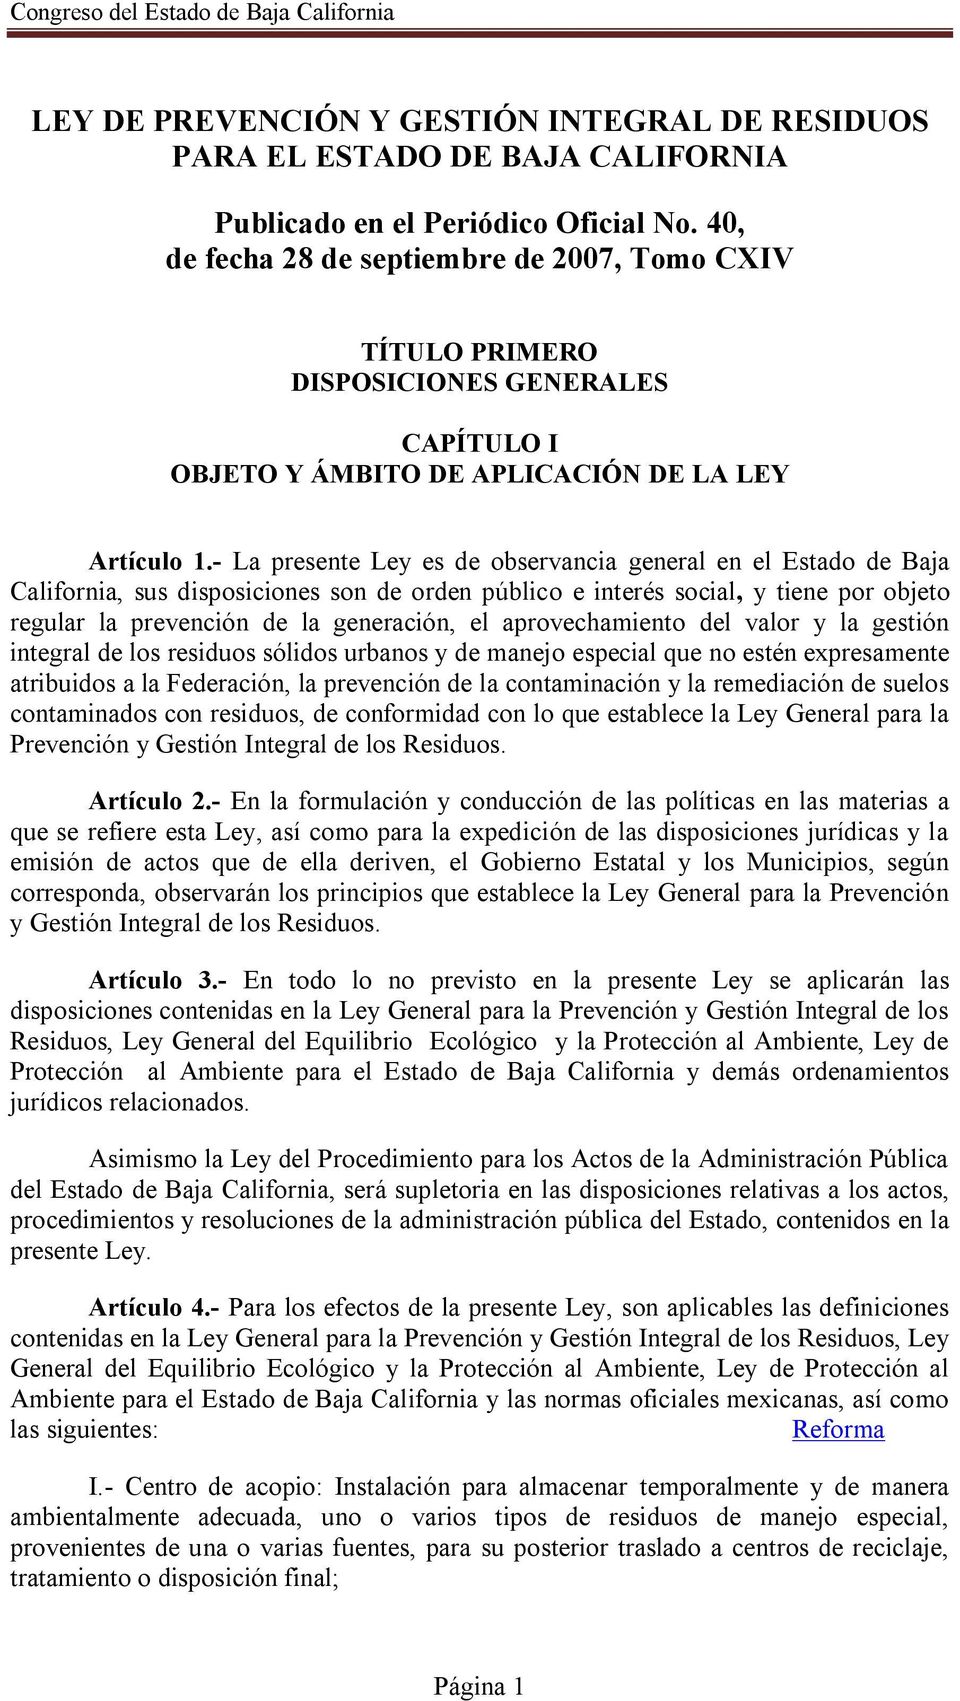 - La presente Ley es de observancia general en el Estado de Baja California, sus disposiciones son de orden público e interés social, y tiene por objeto regular la prevención de la generación, el